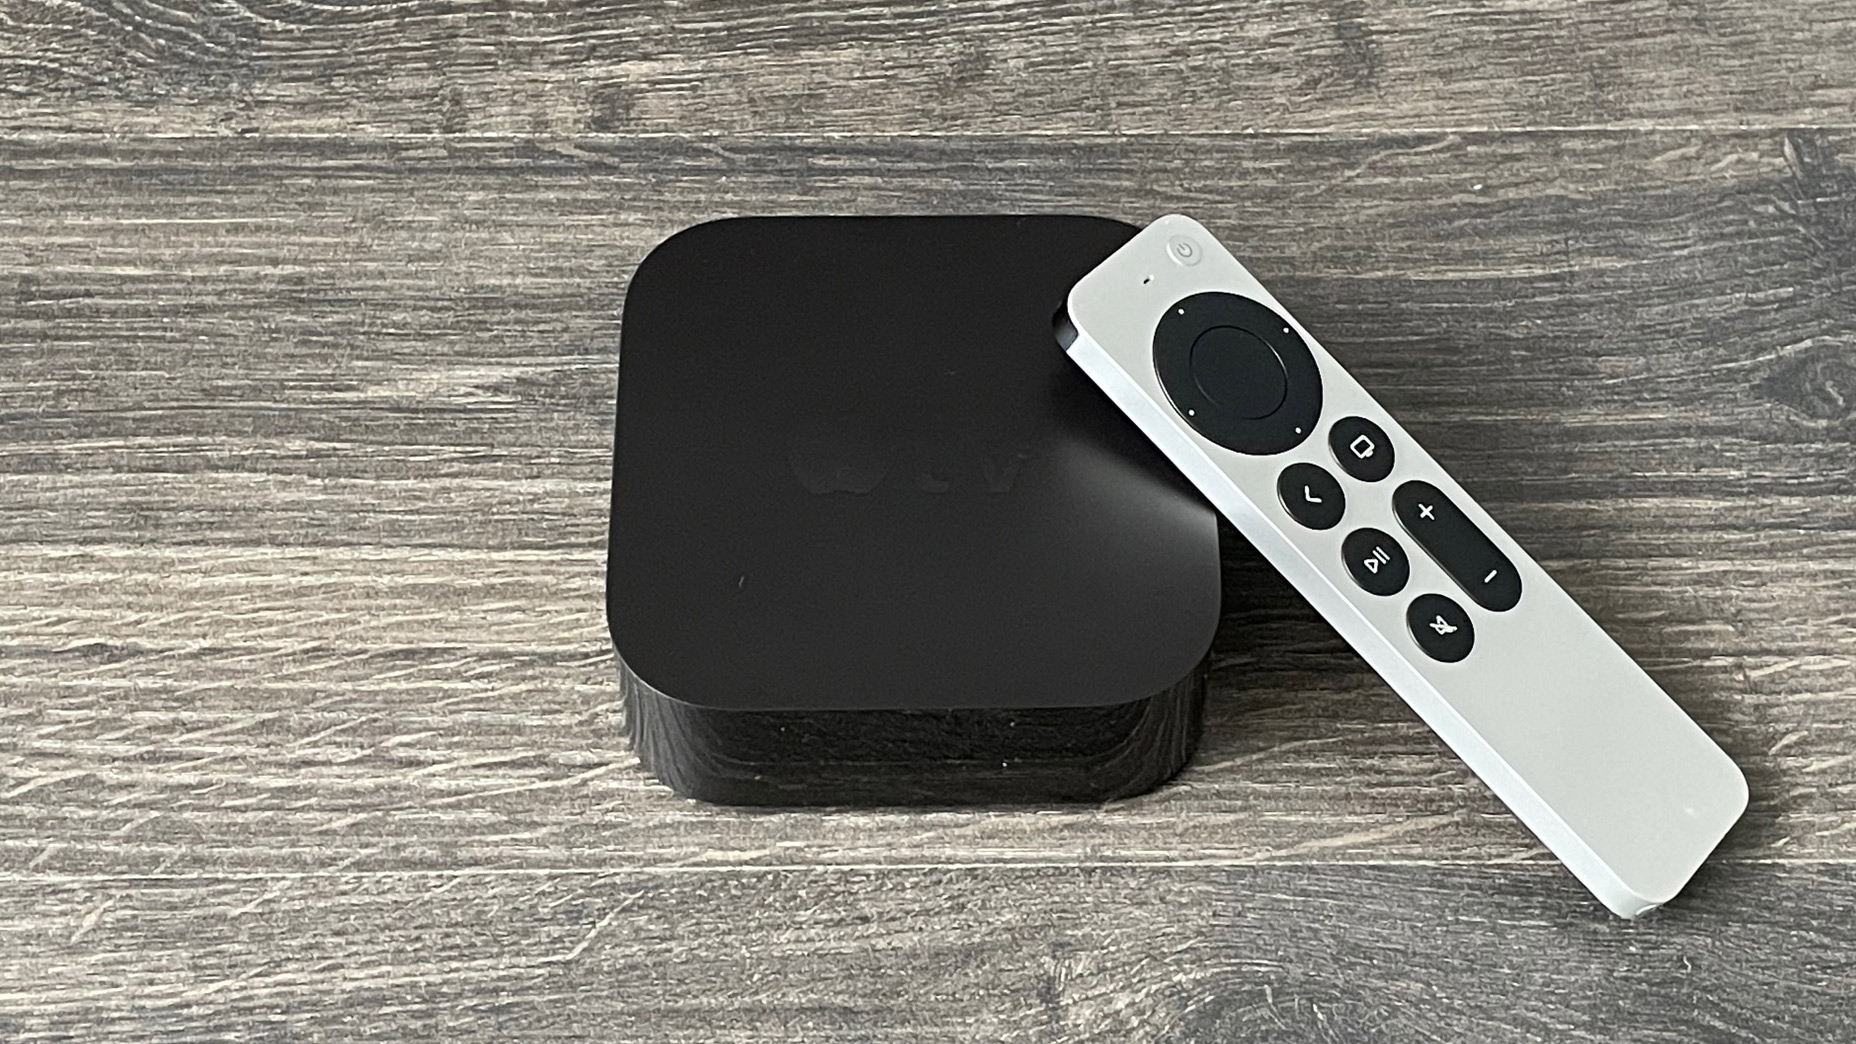 Забудьте о HomePod 2, все колонки AirPlay вскоре могут получить полную поддержку Apple TV 4K